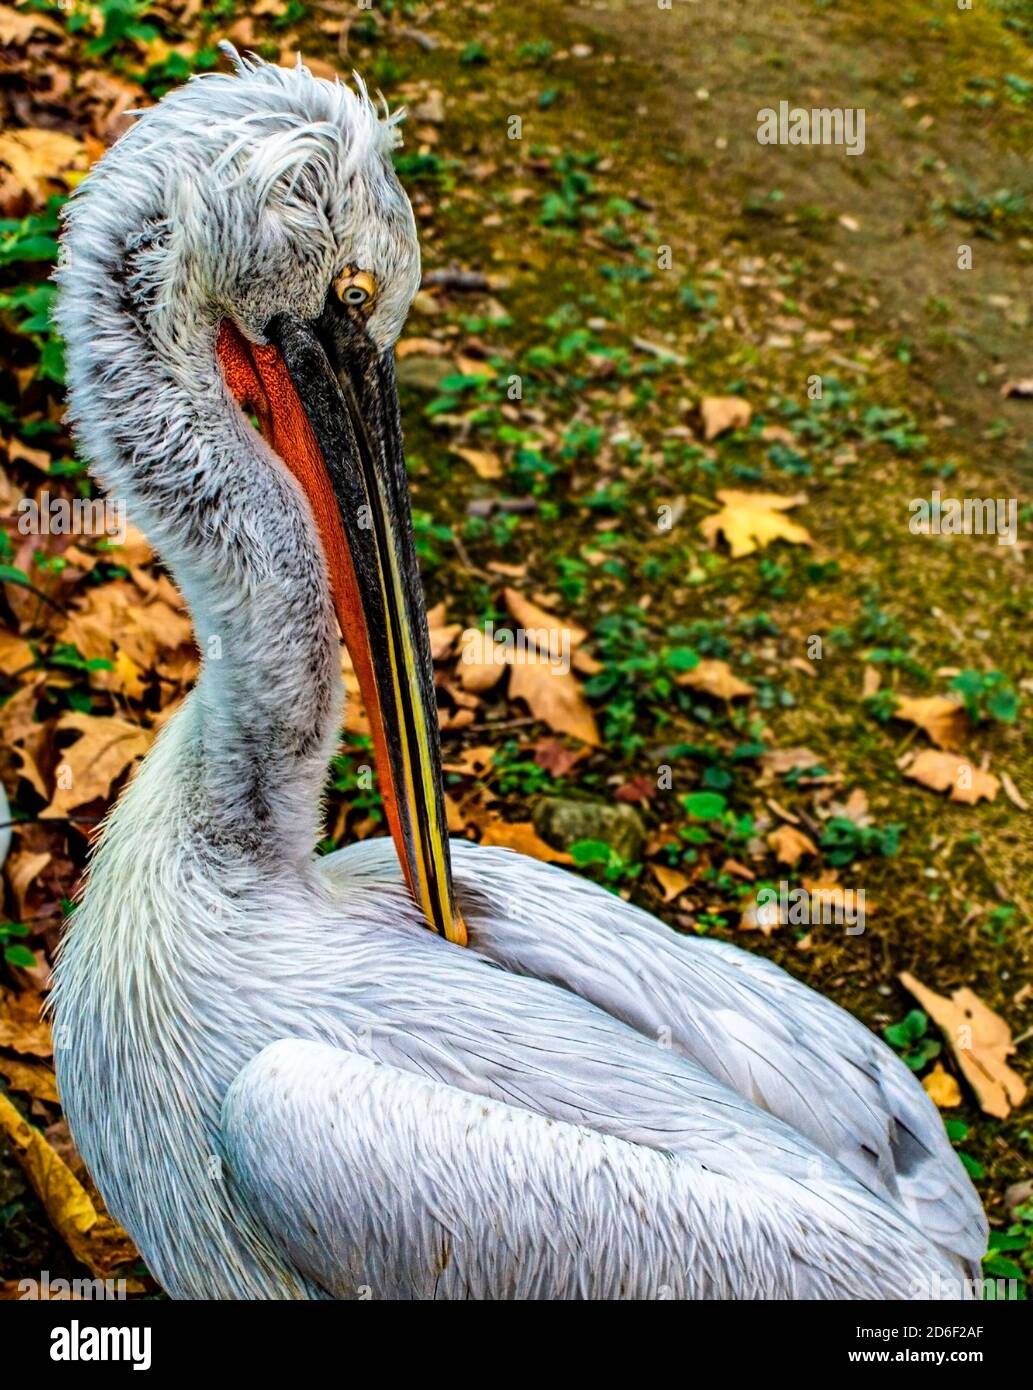 Pelican dálmata (Pelecanus crispus) cerca de la limpieza de plumas. Observación de aves, ornitología Foto de stock